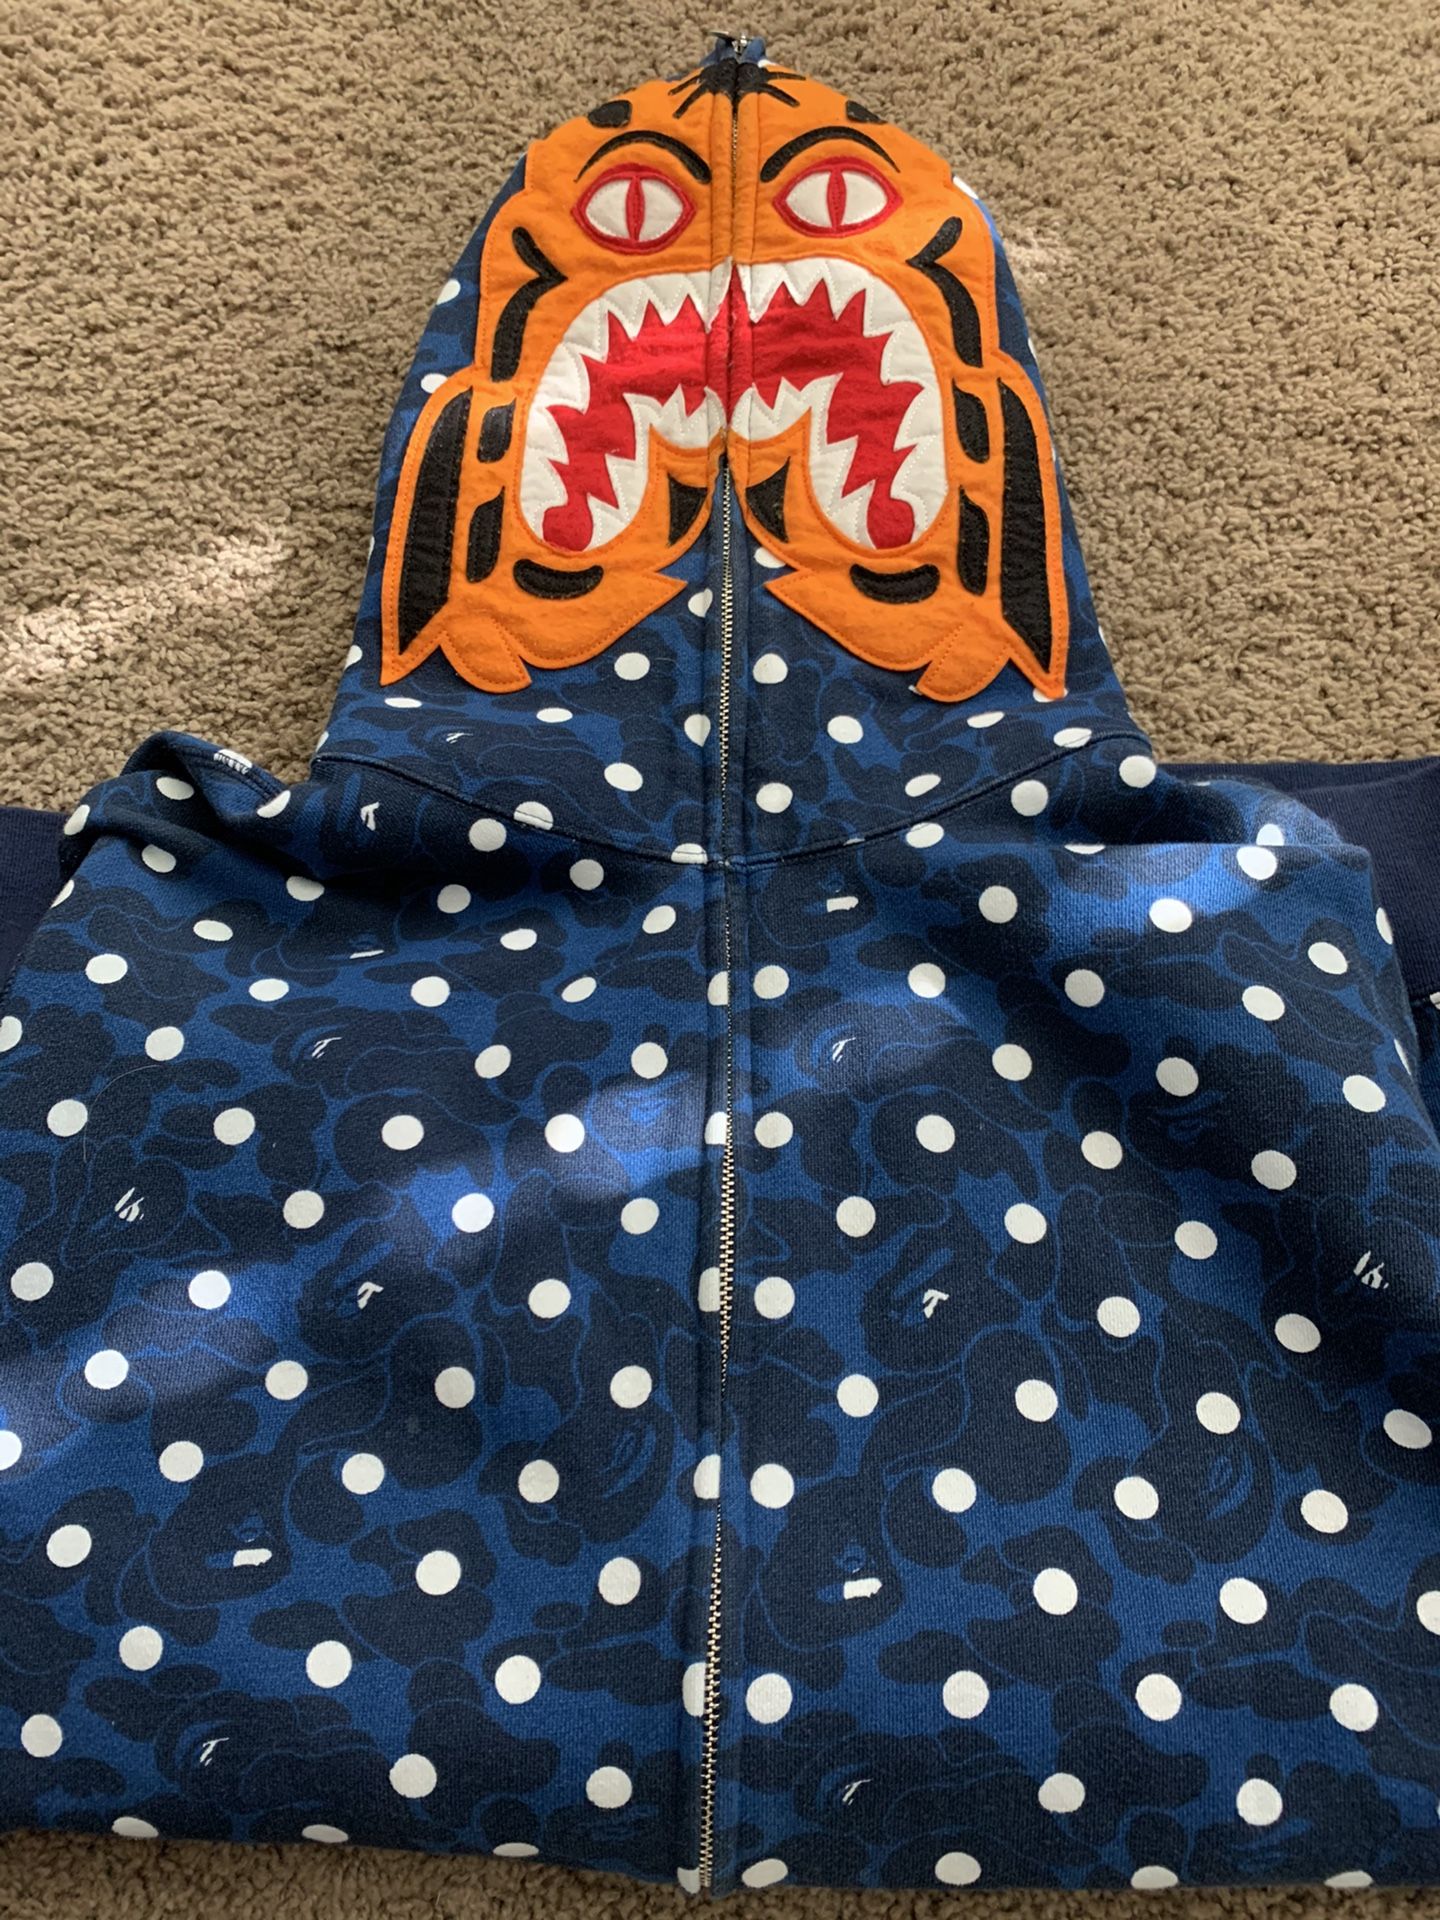 Bape tiger hoodie